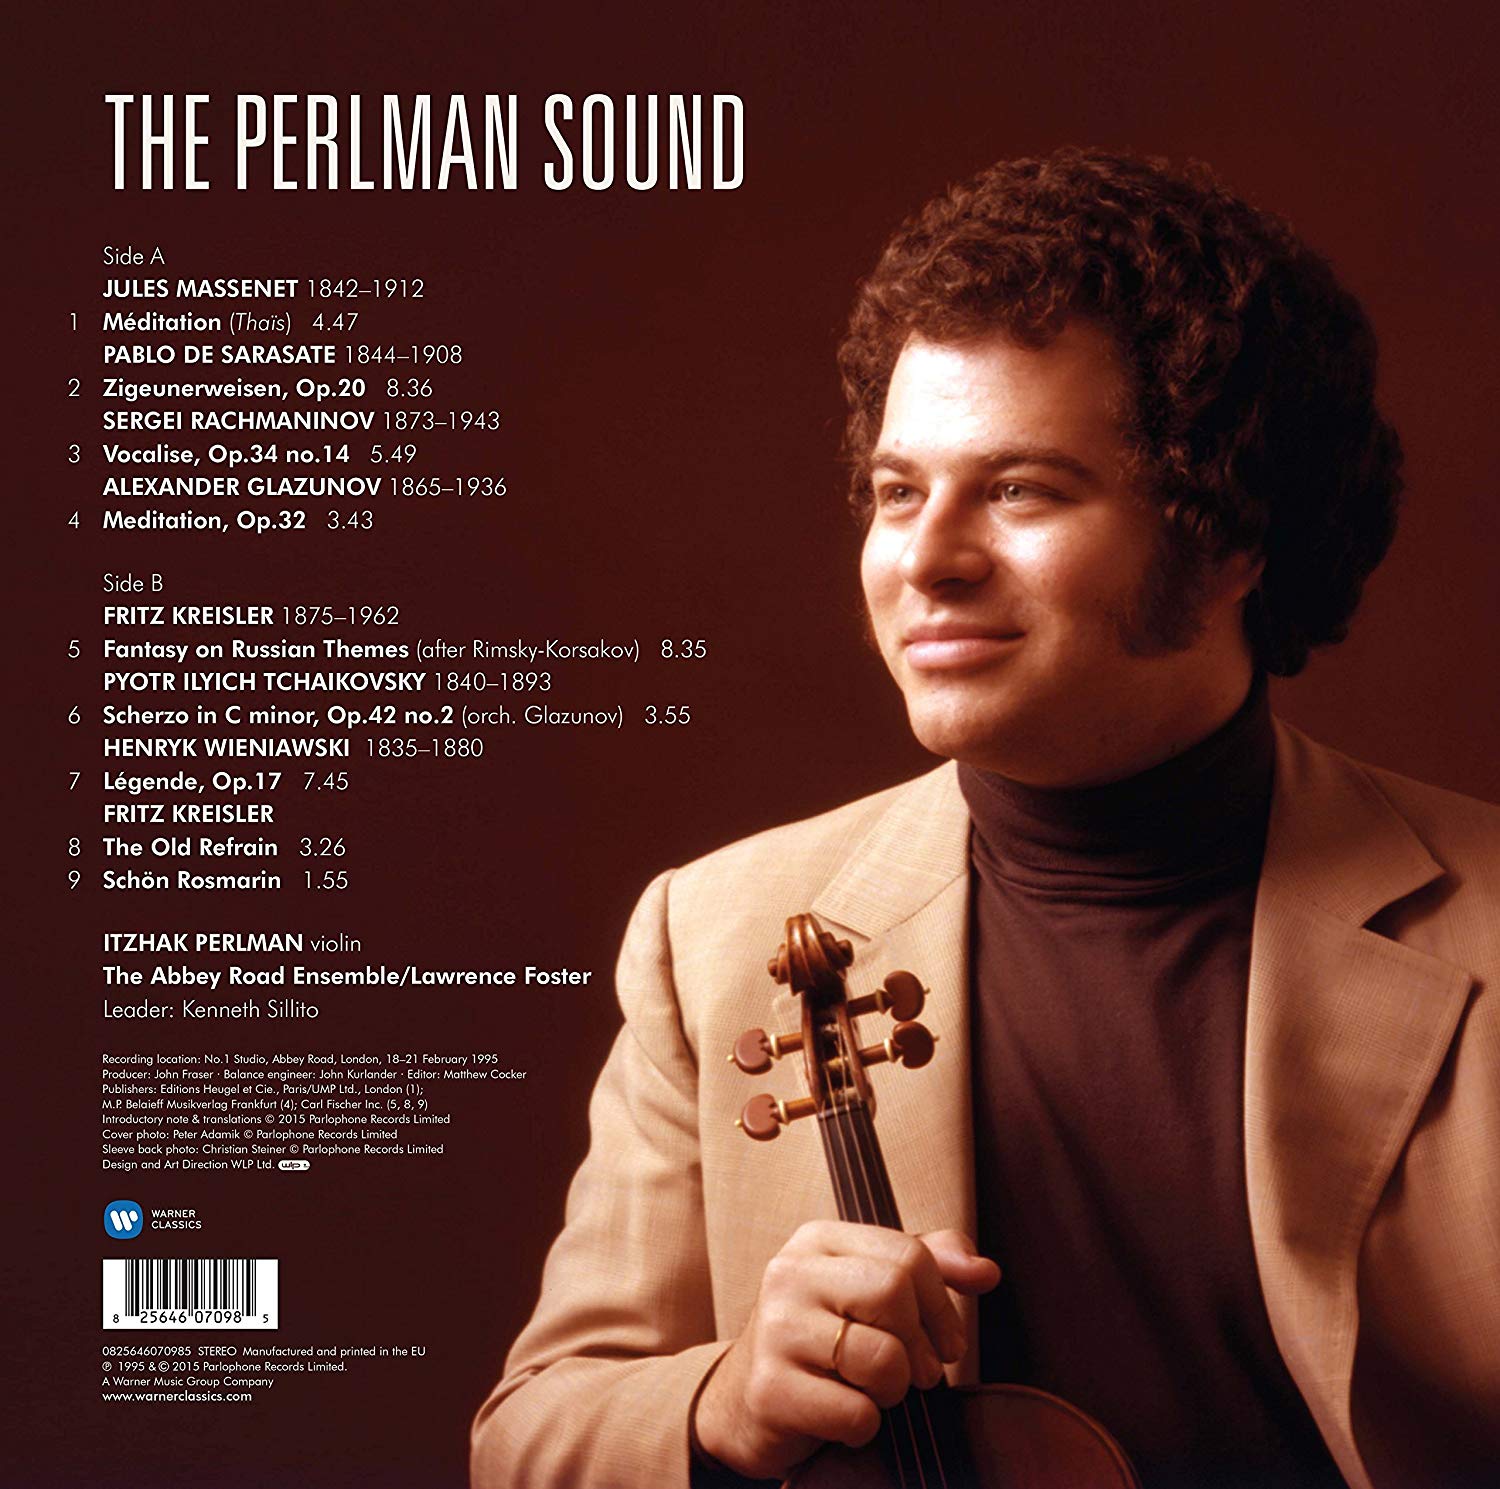 The Perlman Sound - Vinil | Itzhak Perlman